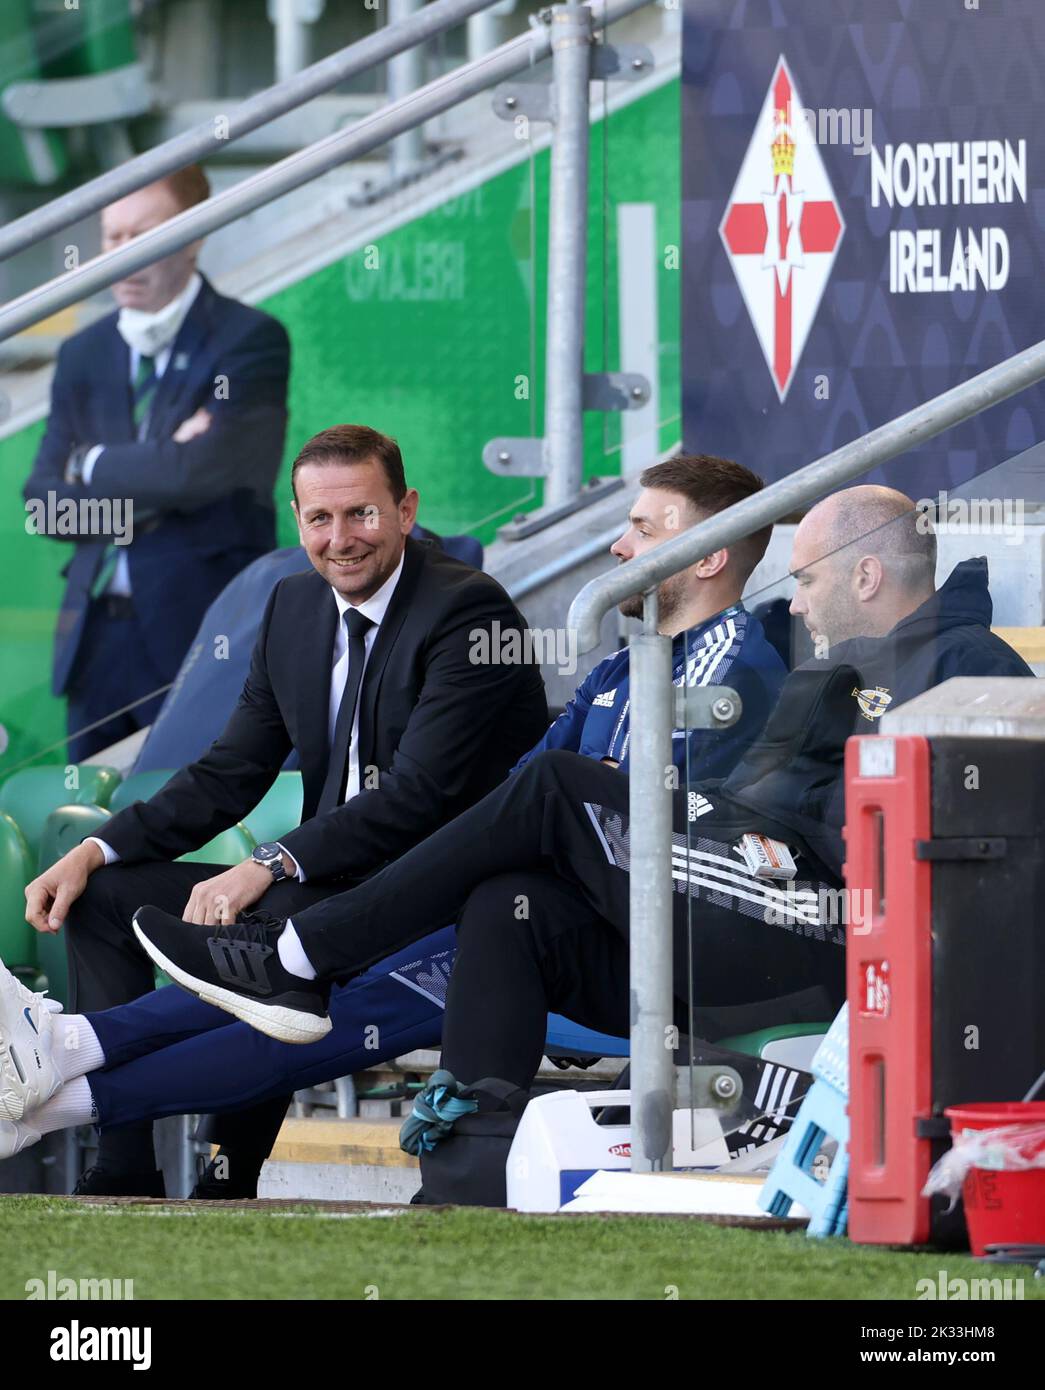 Ian Baraclough, directeur de l'Irlande du Nord (à gauche), avant le match du groupe J de l'UEFA Nations League à Windsor Park, Belfast. Date de la photo: Samedi 24 septembre 2022. Banque D'Images